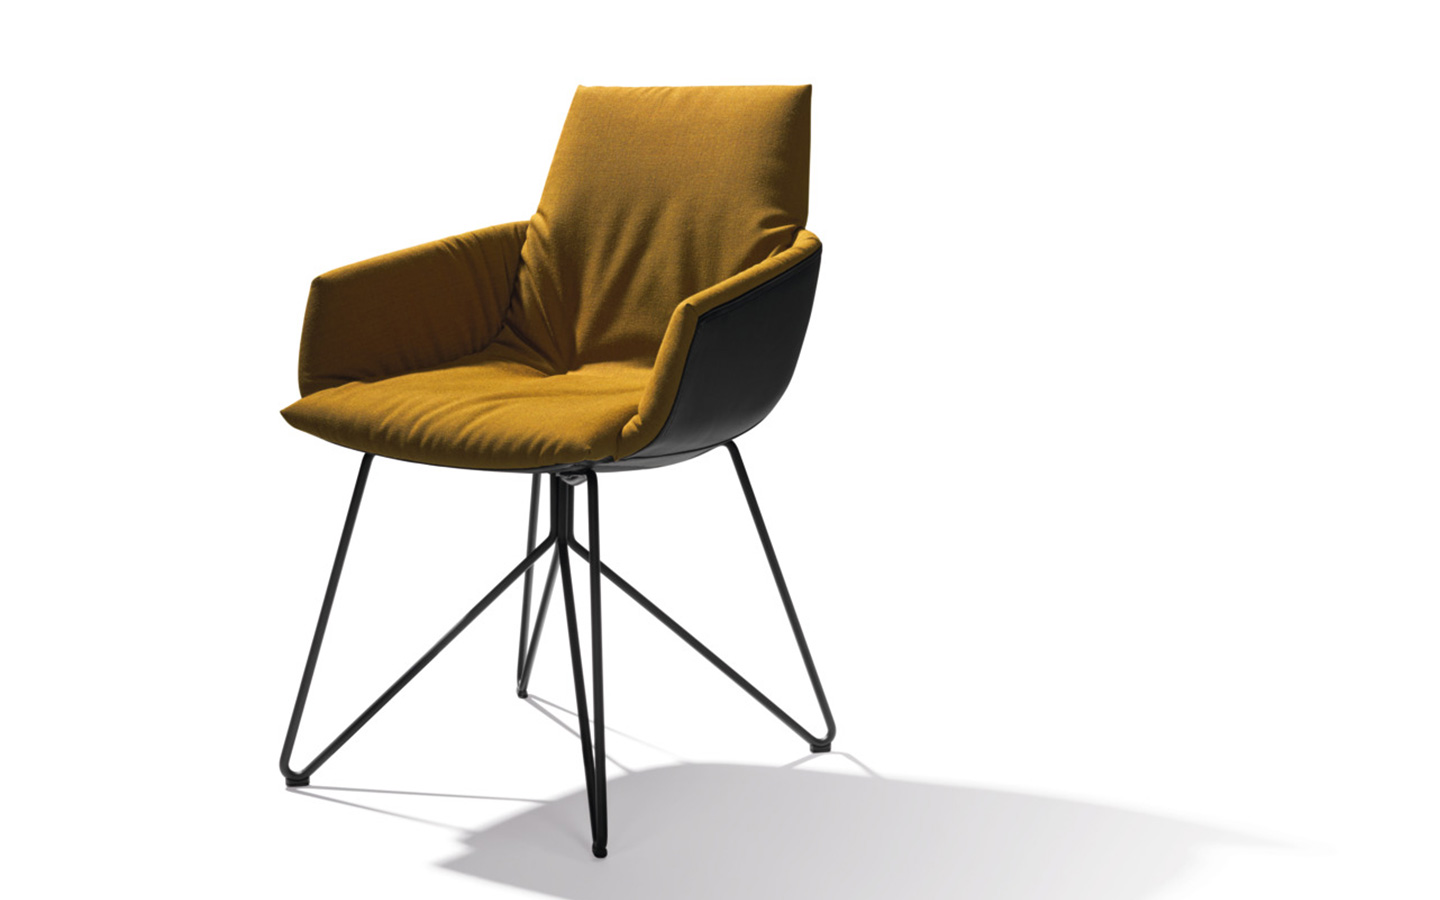 TEAM 7 presenta le sue nuove sedie dal design sostenibile